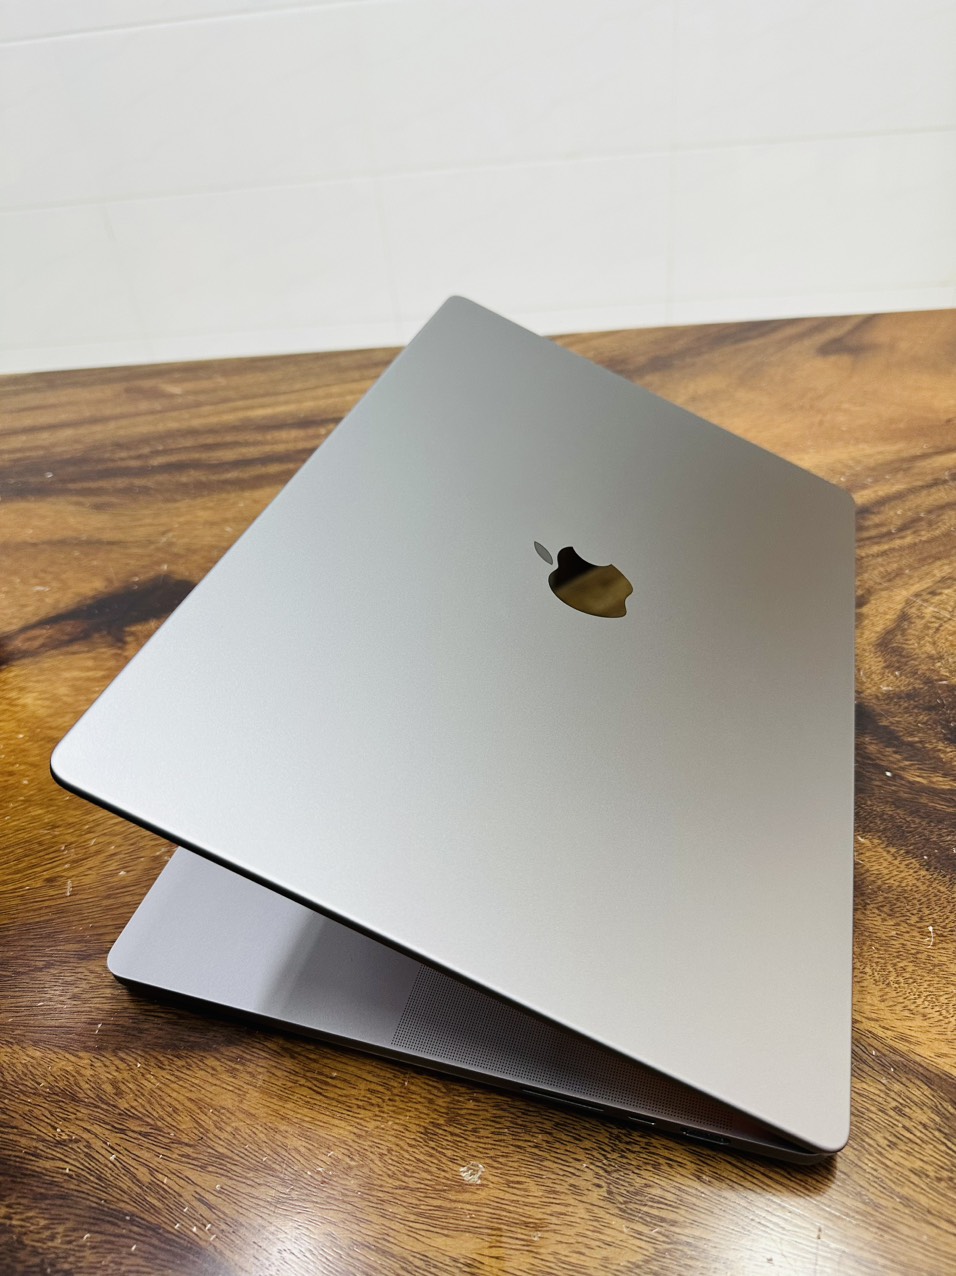 Macbook Pro 16in M1 2021 Gray 2